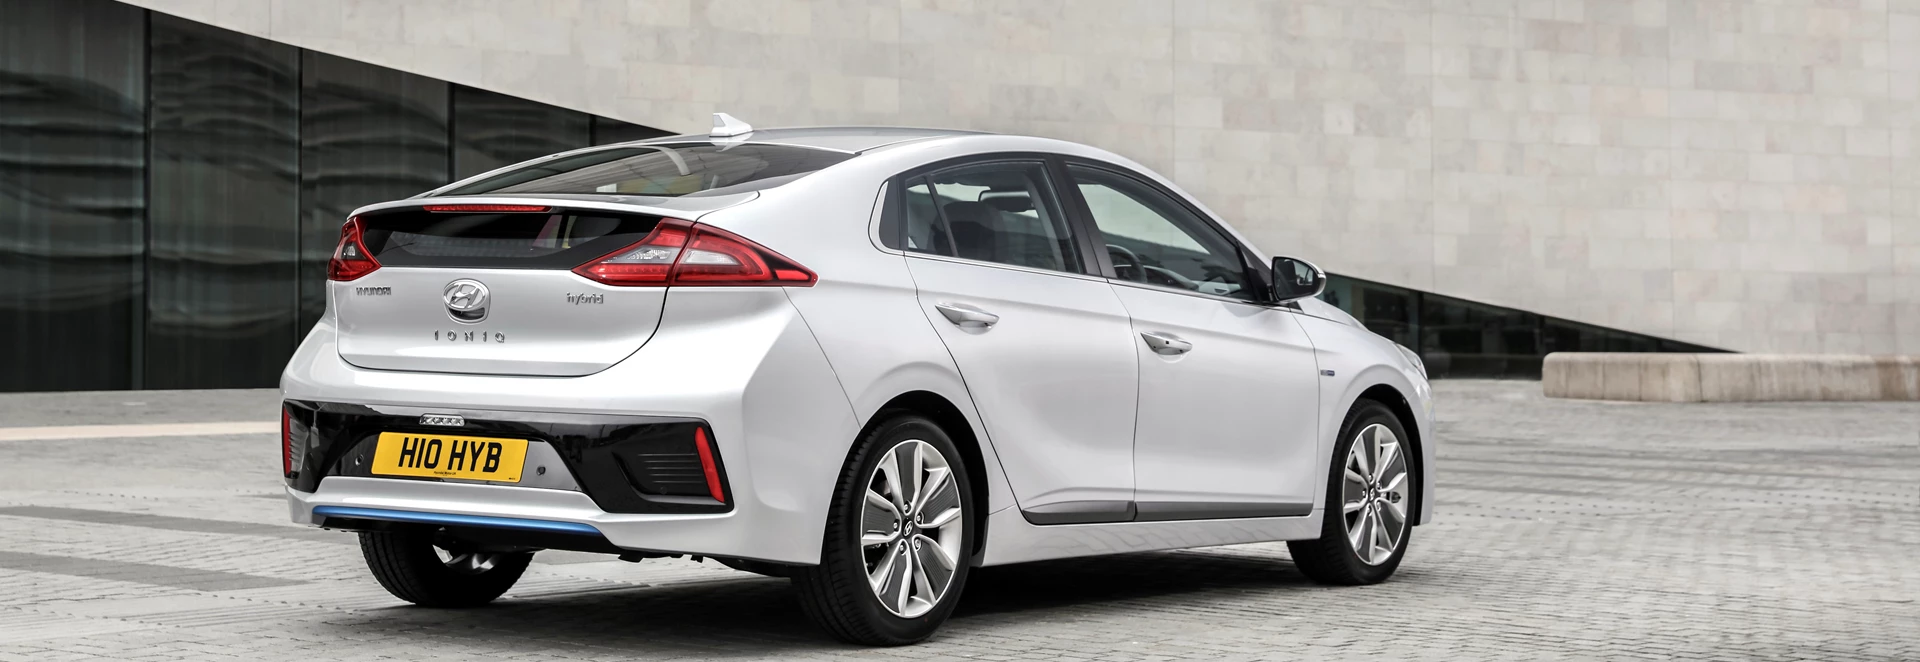 Hyundai IONIQ Hybrid Premium SE hatchback review 